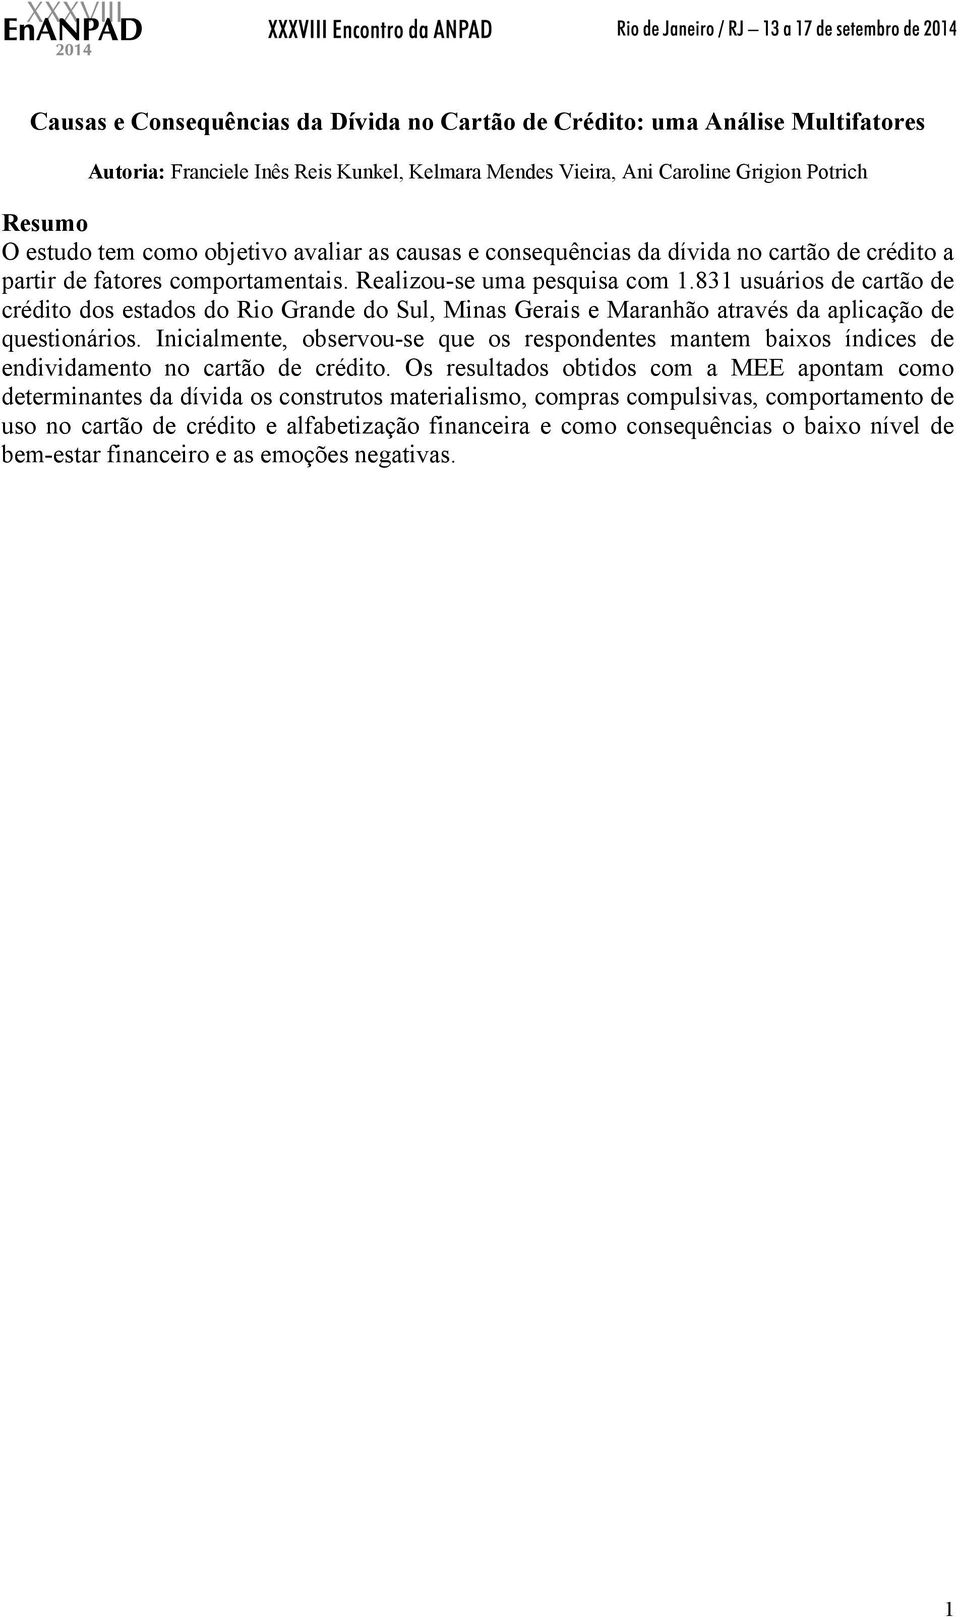 831 usuários de cartão de crédito dos estados do Rio Grande do Sul, Minas Gerais e Maranhão através da aplicação de questionários.